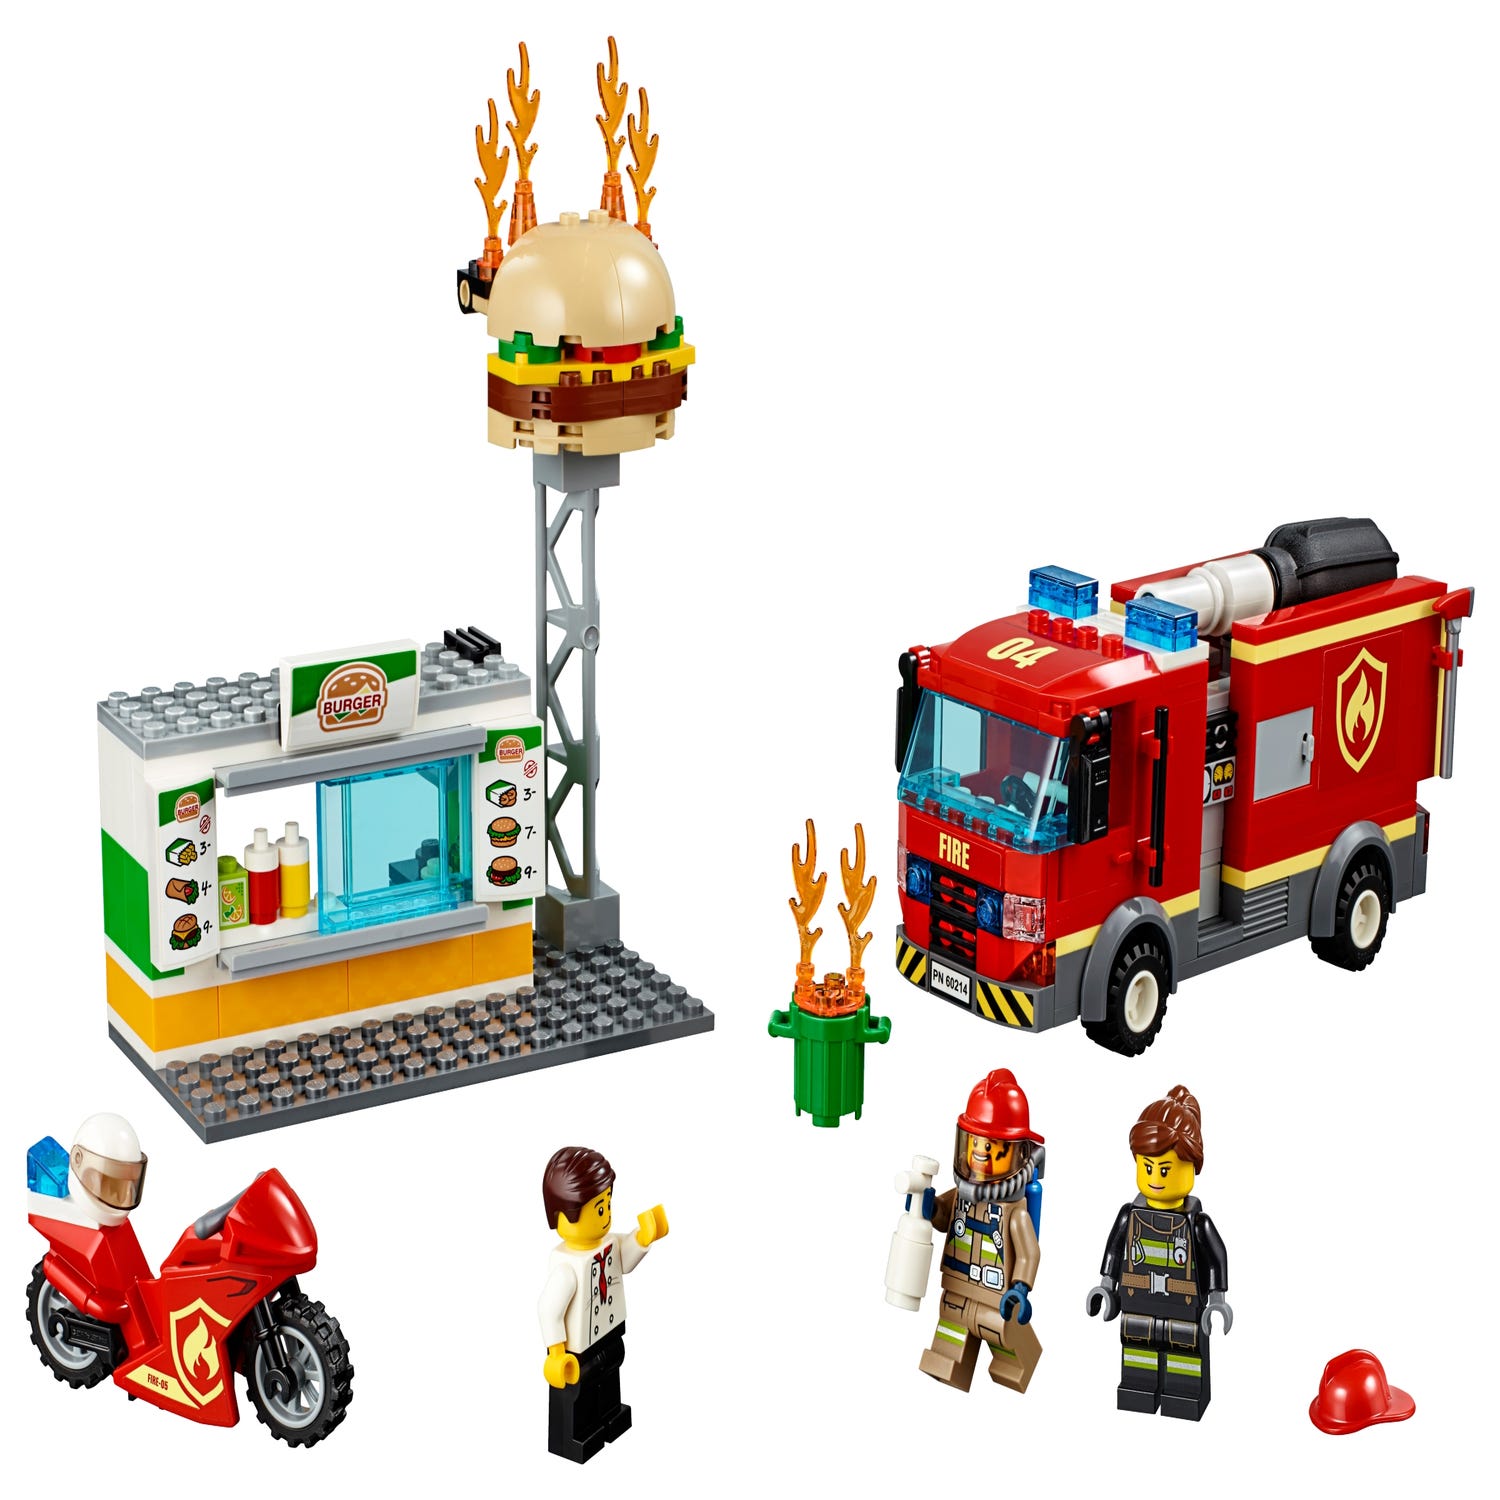 Respect Onverschilligheid Berg kleding op Brand bij het hamburgerrestaurant 60214 | City | Officiële LEGO® winkel NL